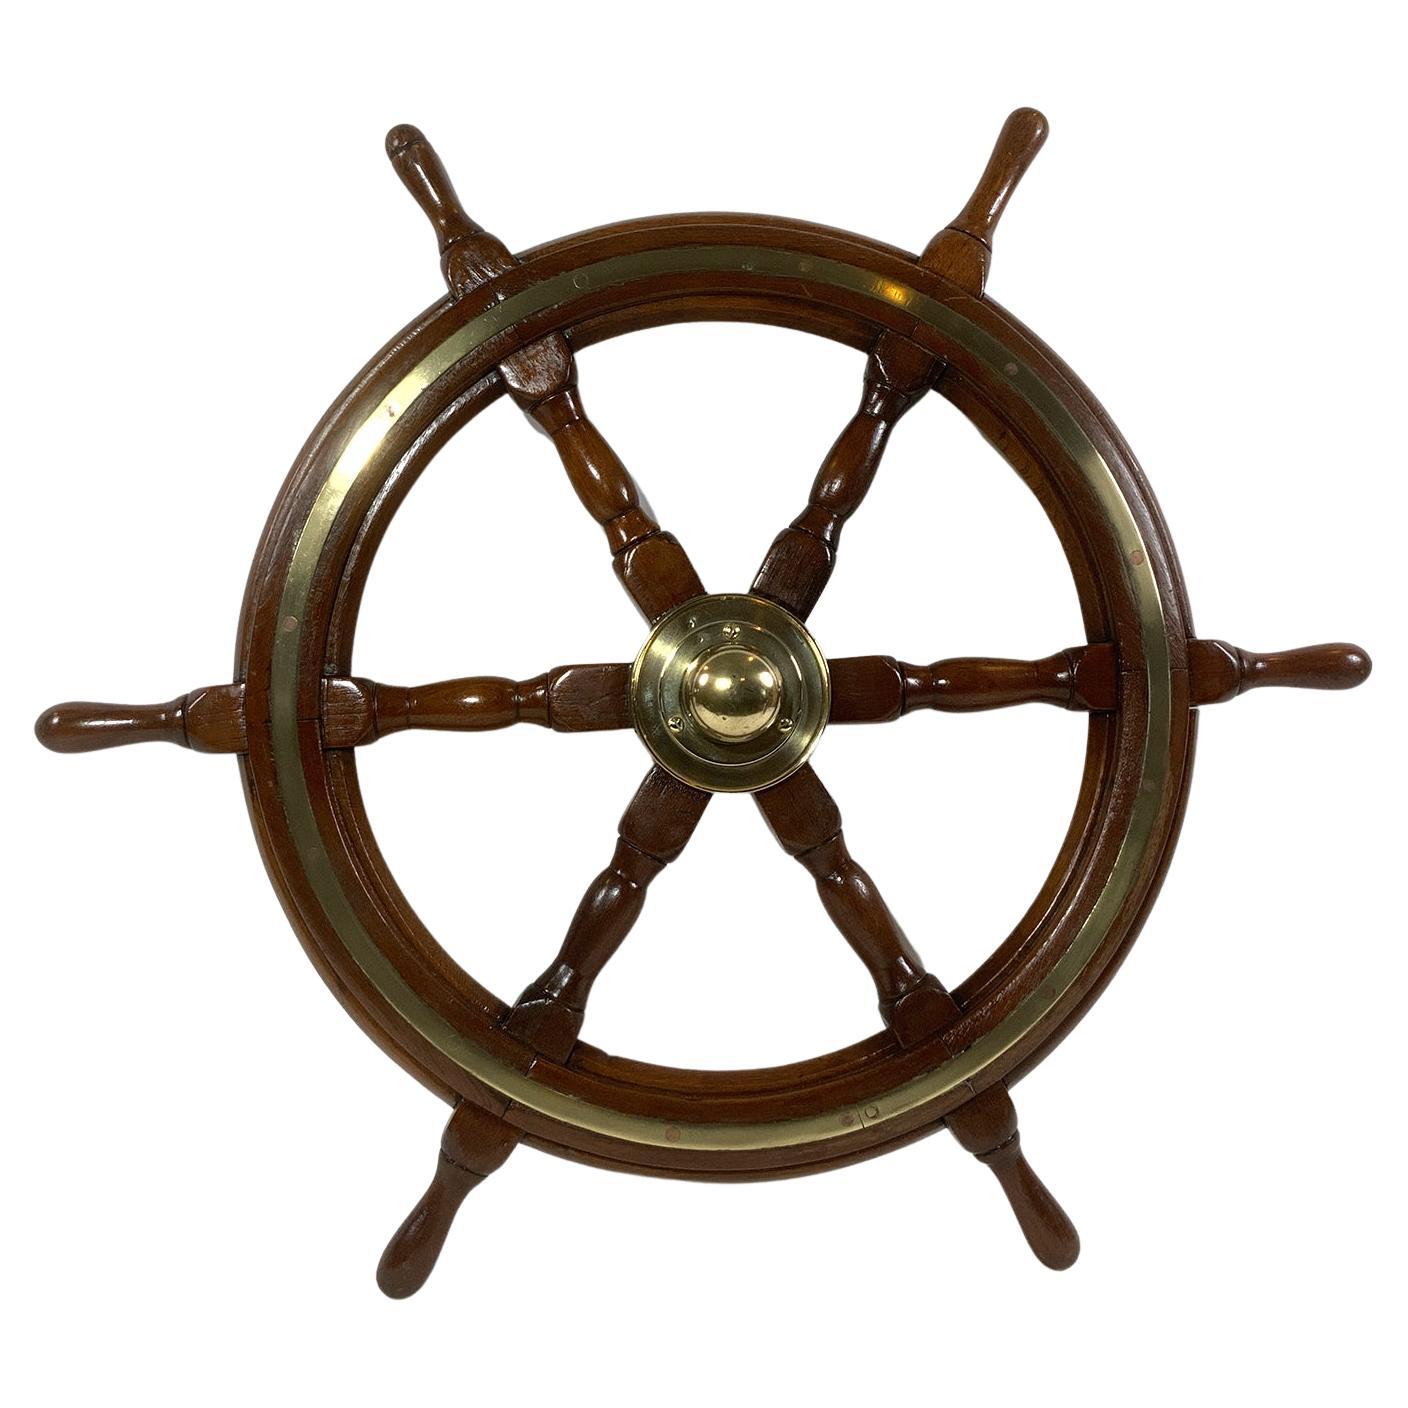 Six Spoke Ships Wheel from a Yacht